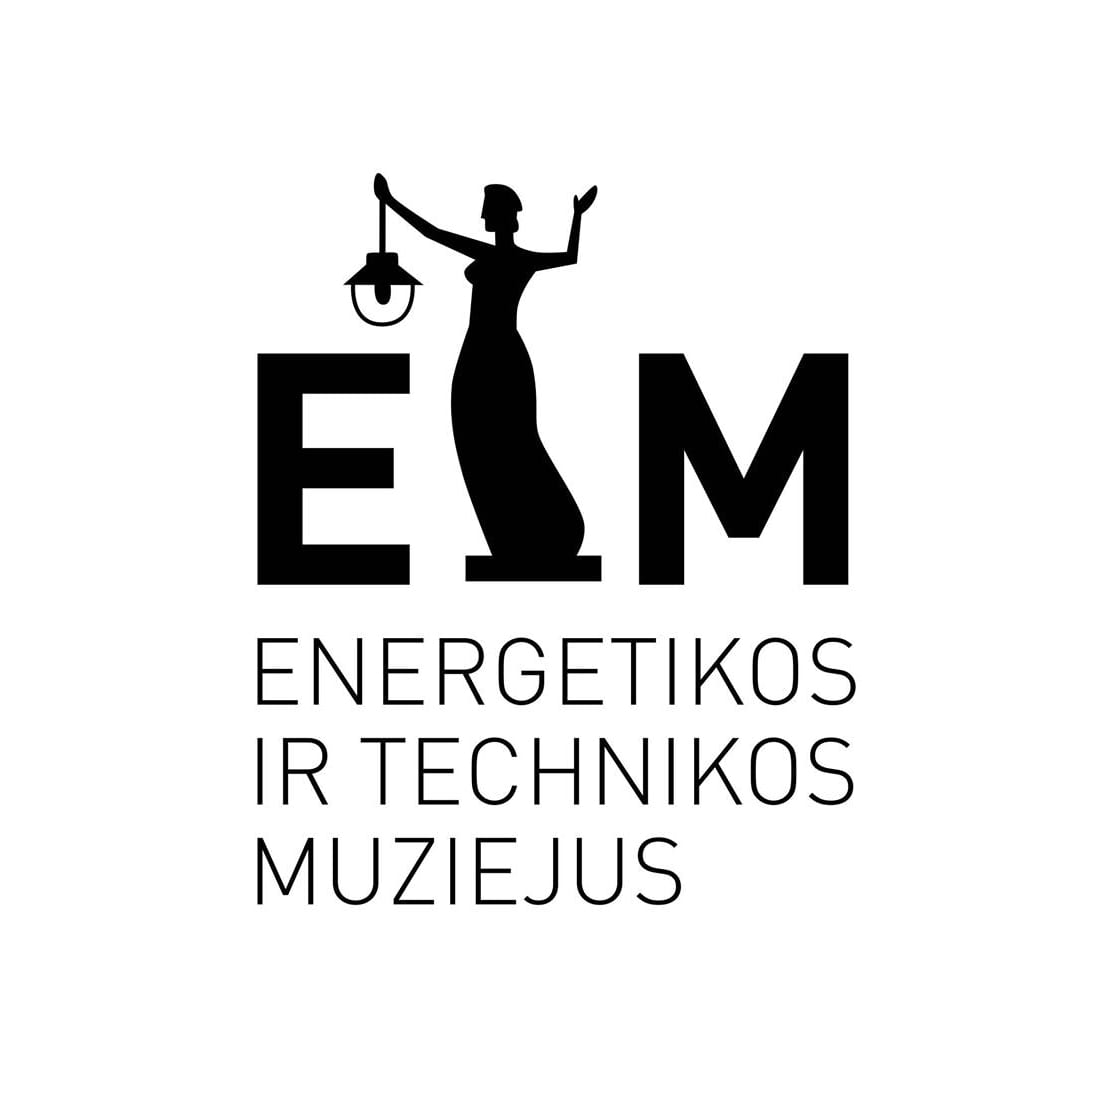 Ekspozicijos koordinatorius (-ė) Vilniuje, VšĮ Energetikos ir technikos muziejus